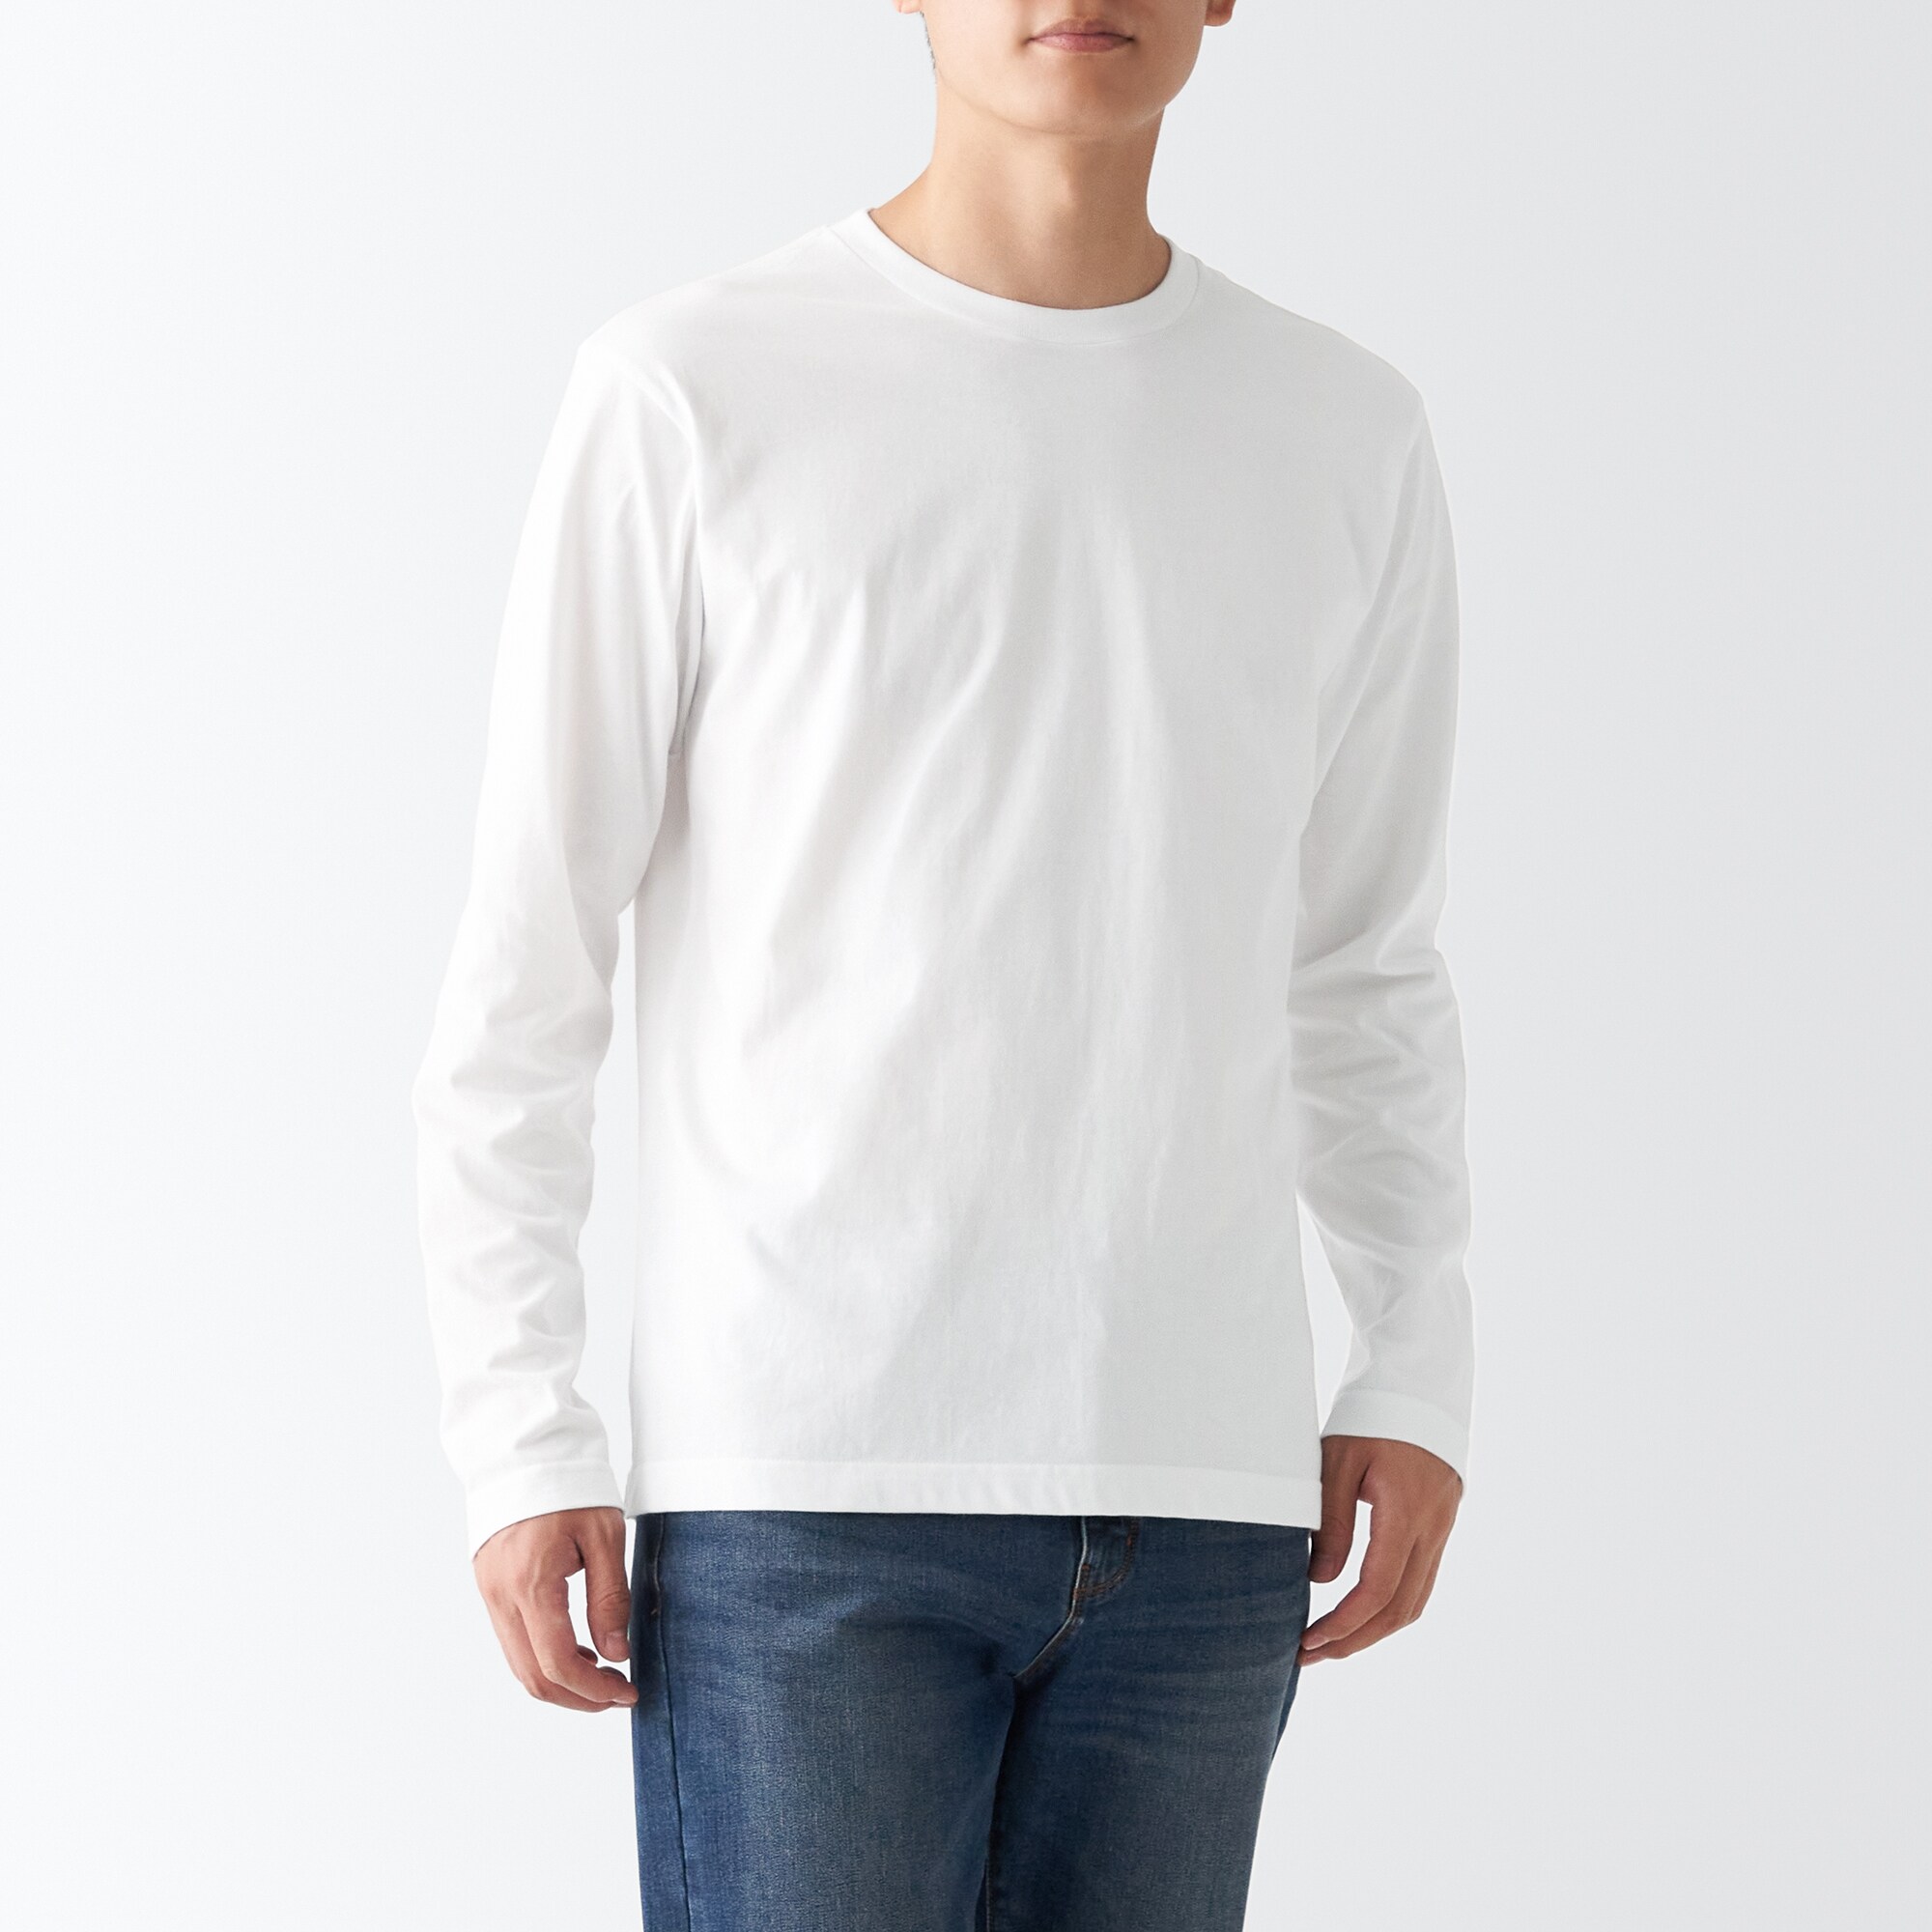 무인양품 일본 저지 크루넥 남성 스웨트 셔츠 티셔츠